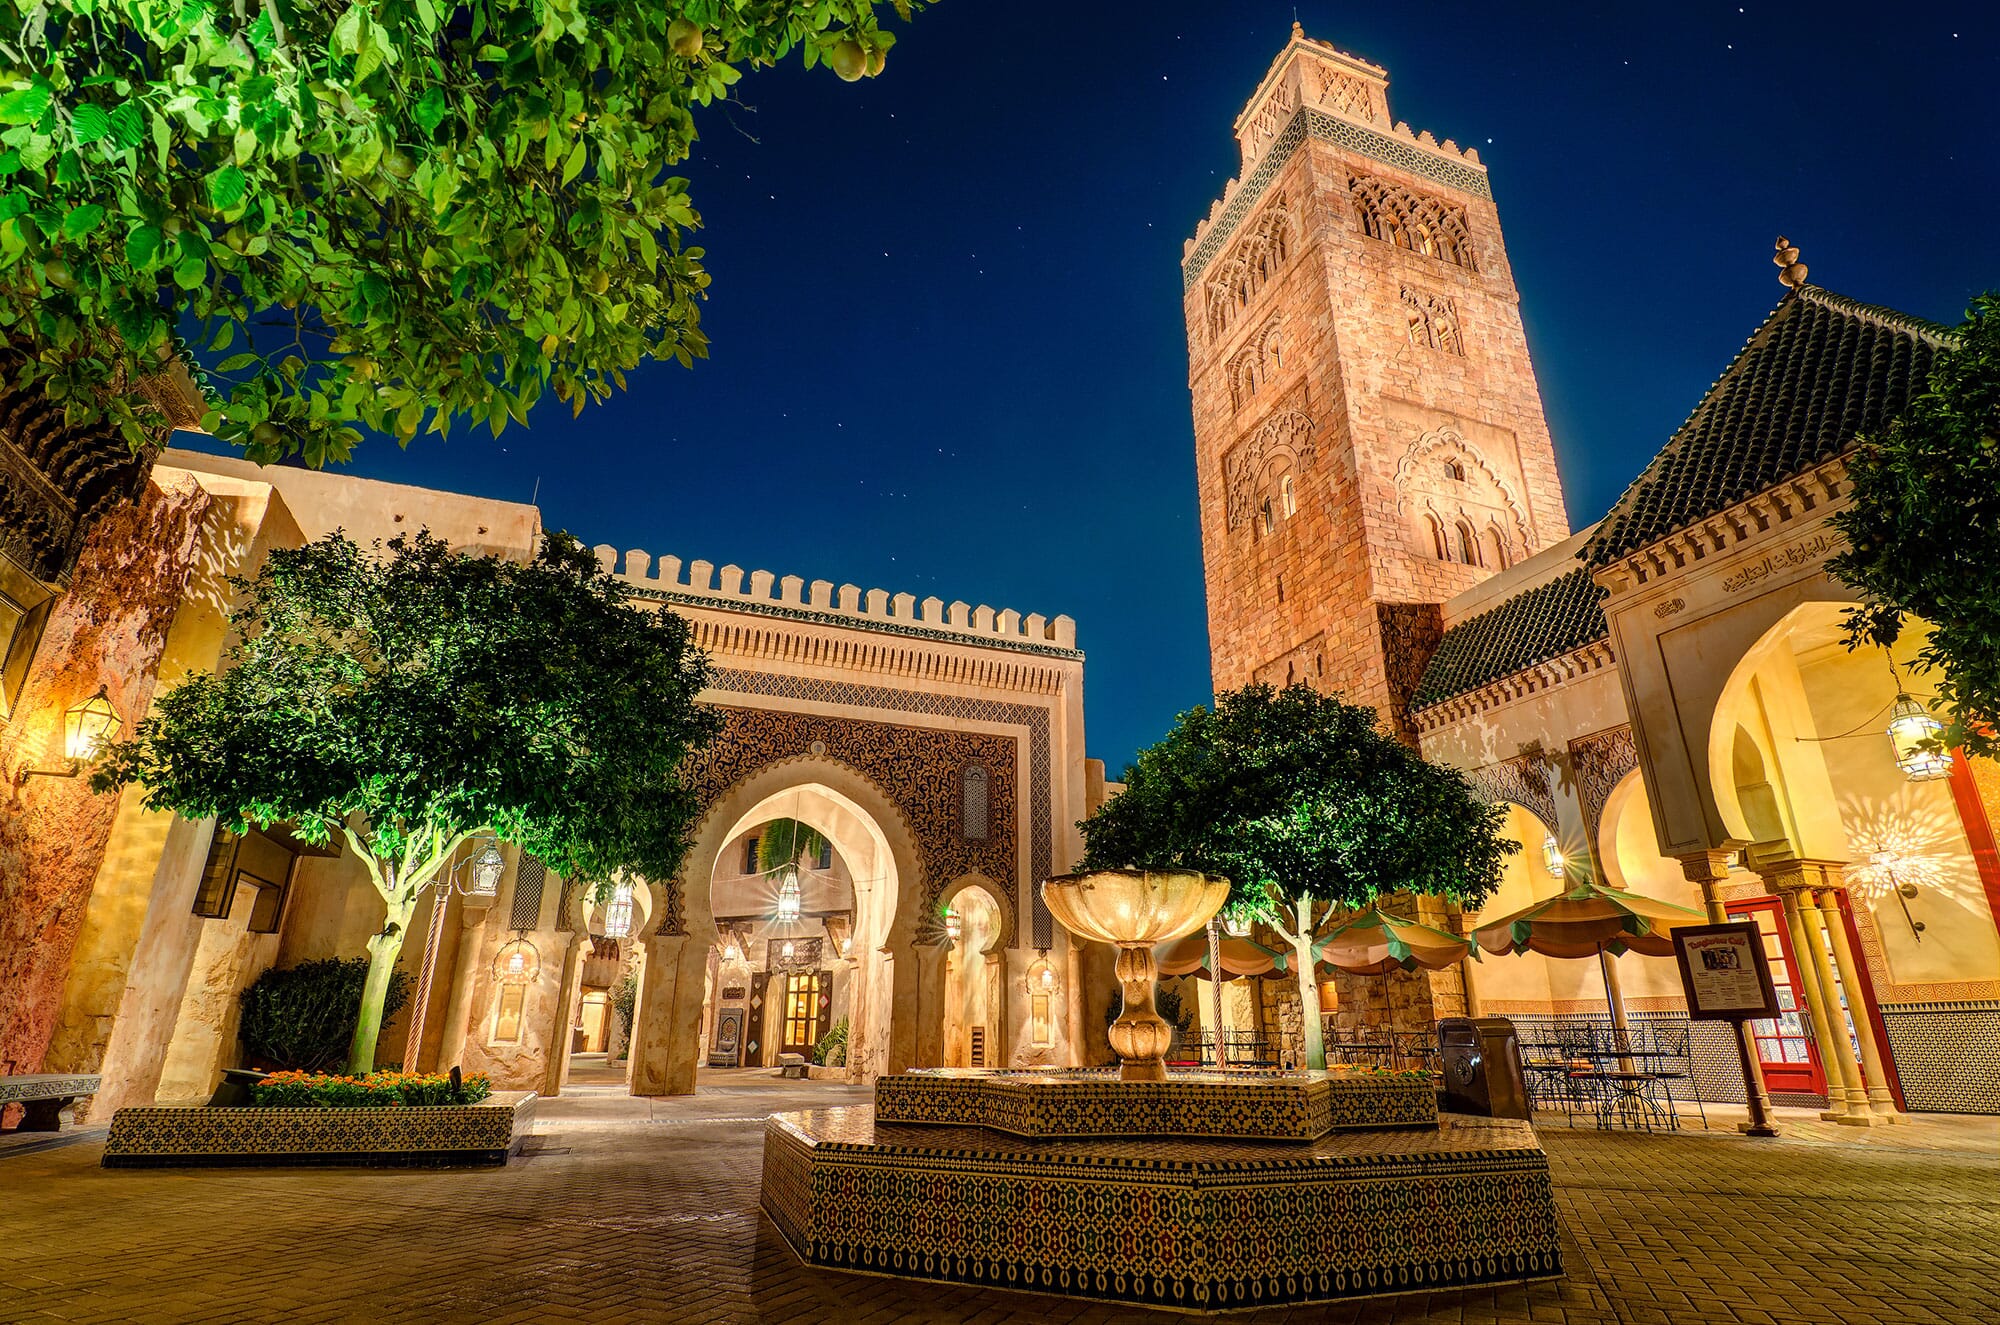 Descubre la Magia de la Medina de Marrakech